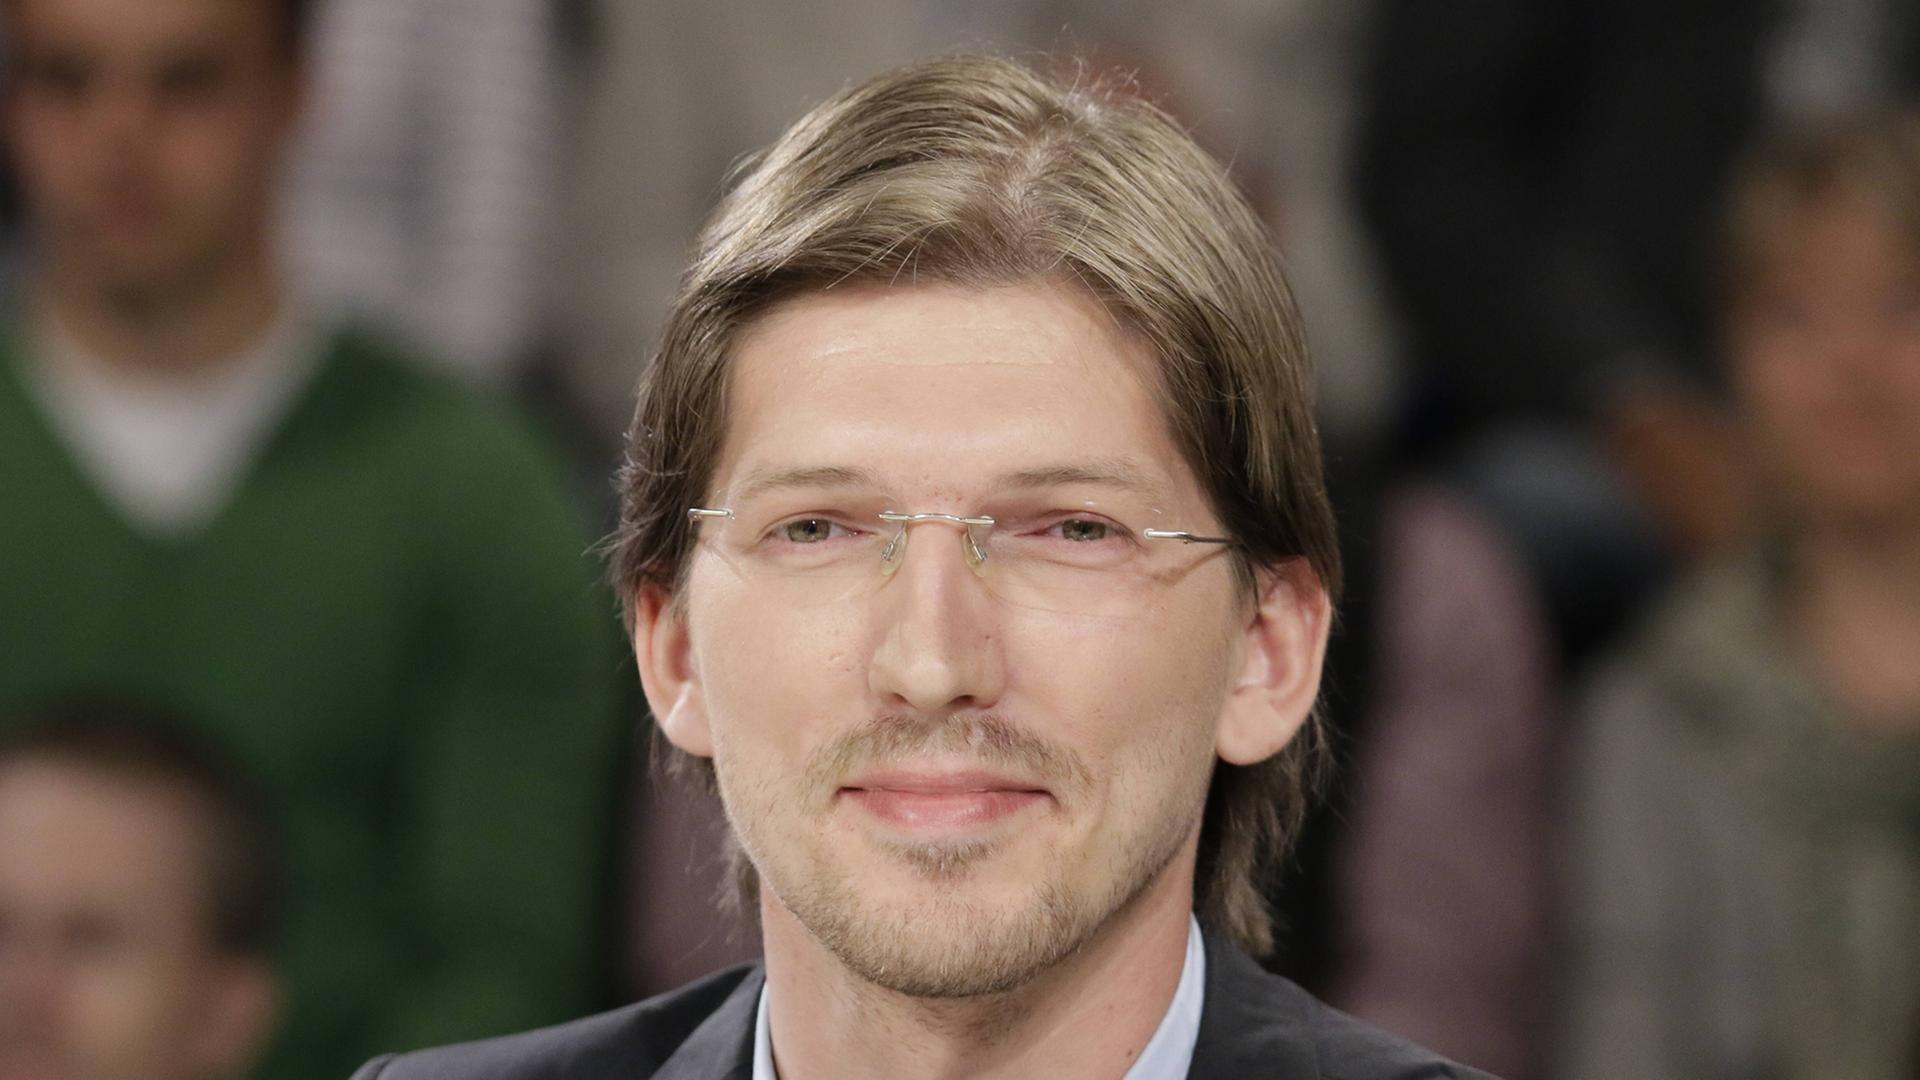 Martin Delius, Piratenpartei, Vorsitzender des BER-Untersuchungsausschusses im Berliner Abgeordnetenhaus